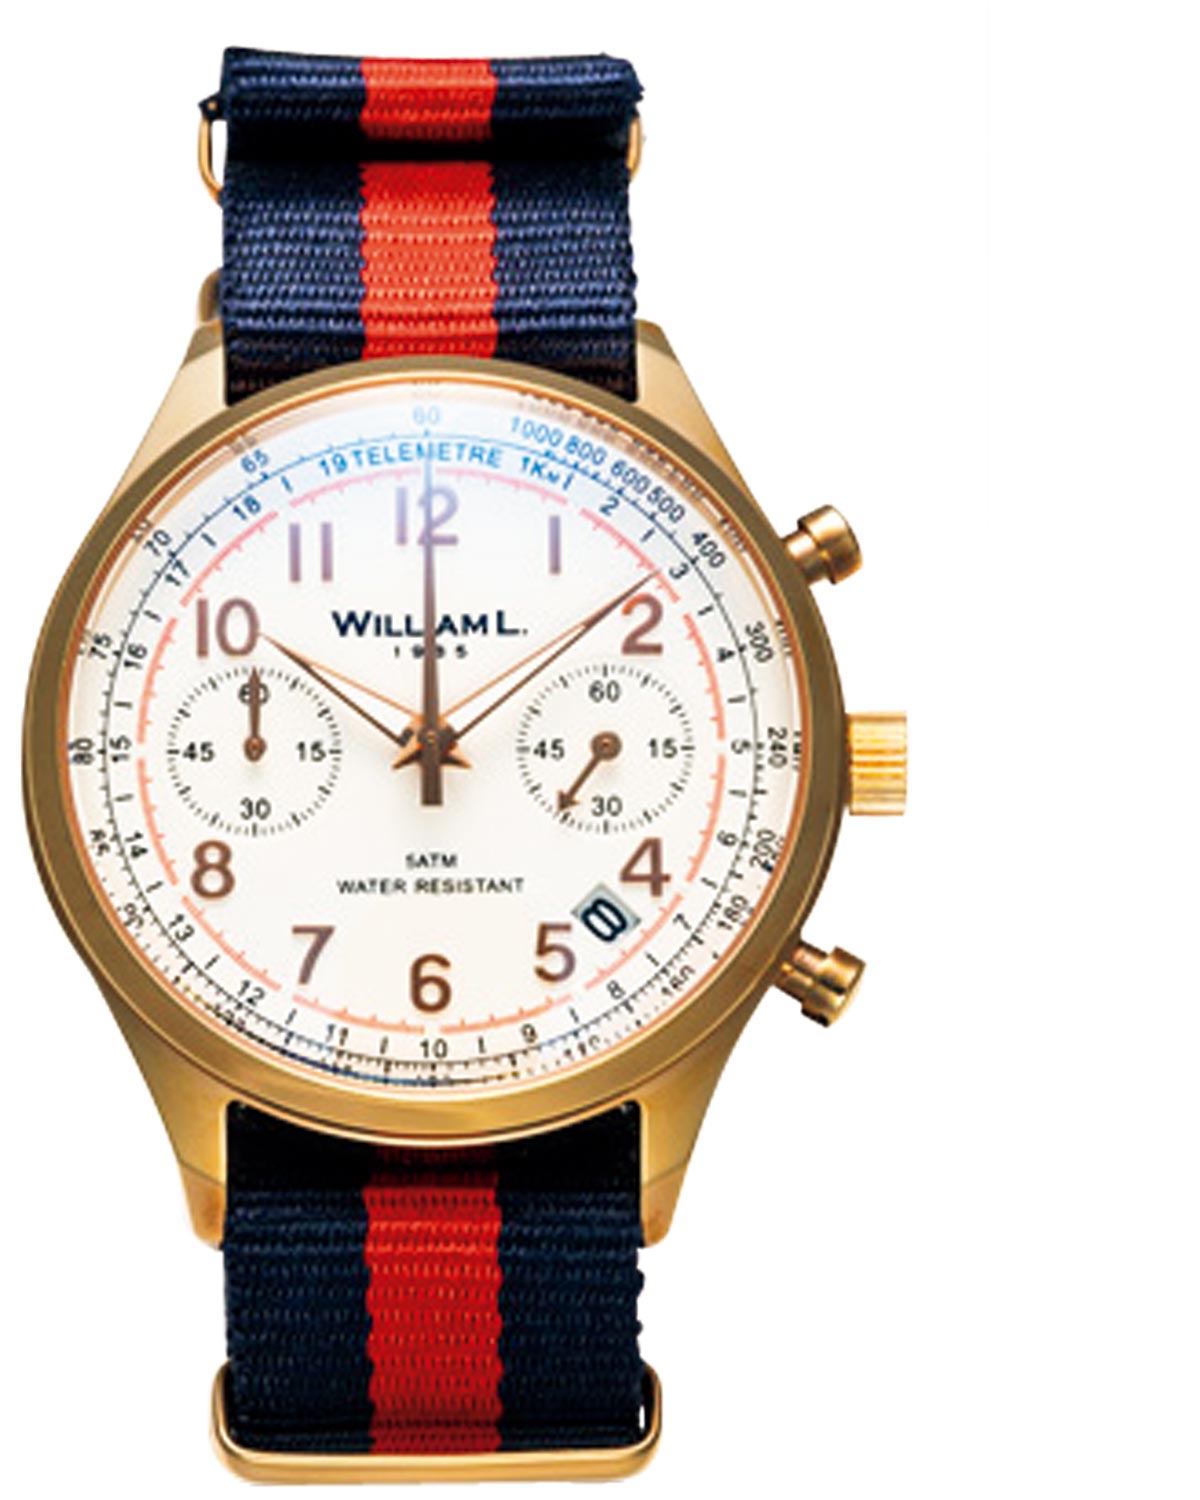 こだわり派のための時計ガイド腕時計はベルトで選んでみるのもおもしろい 時計 Fineboys Online